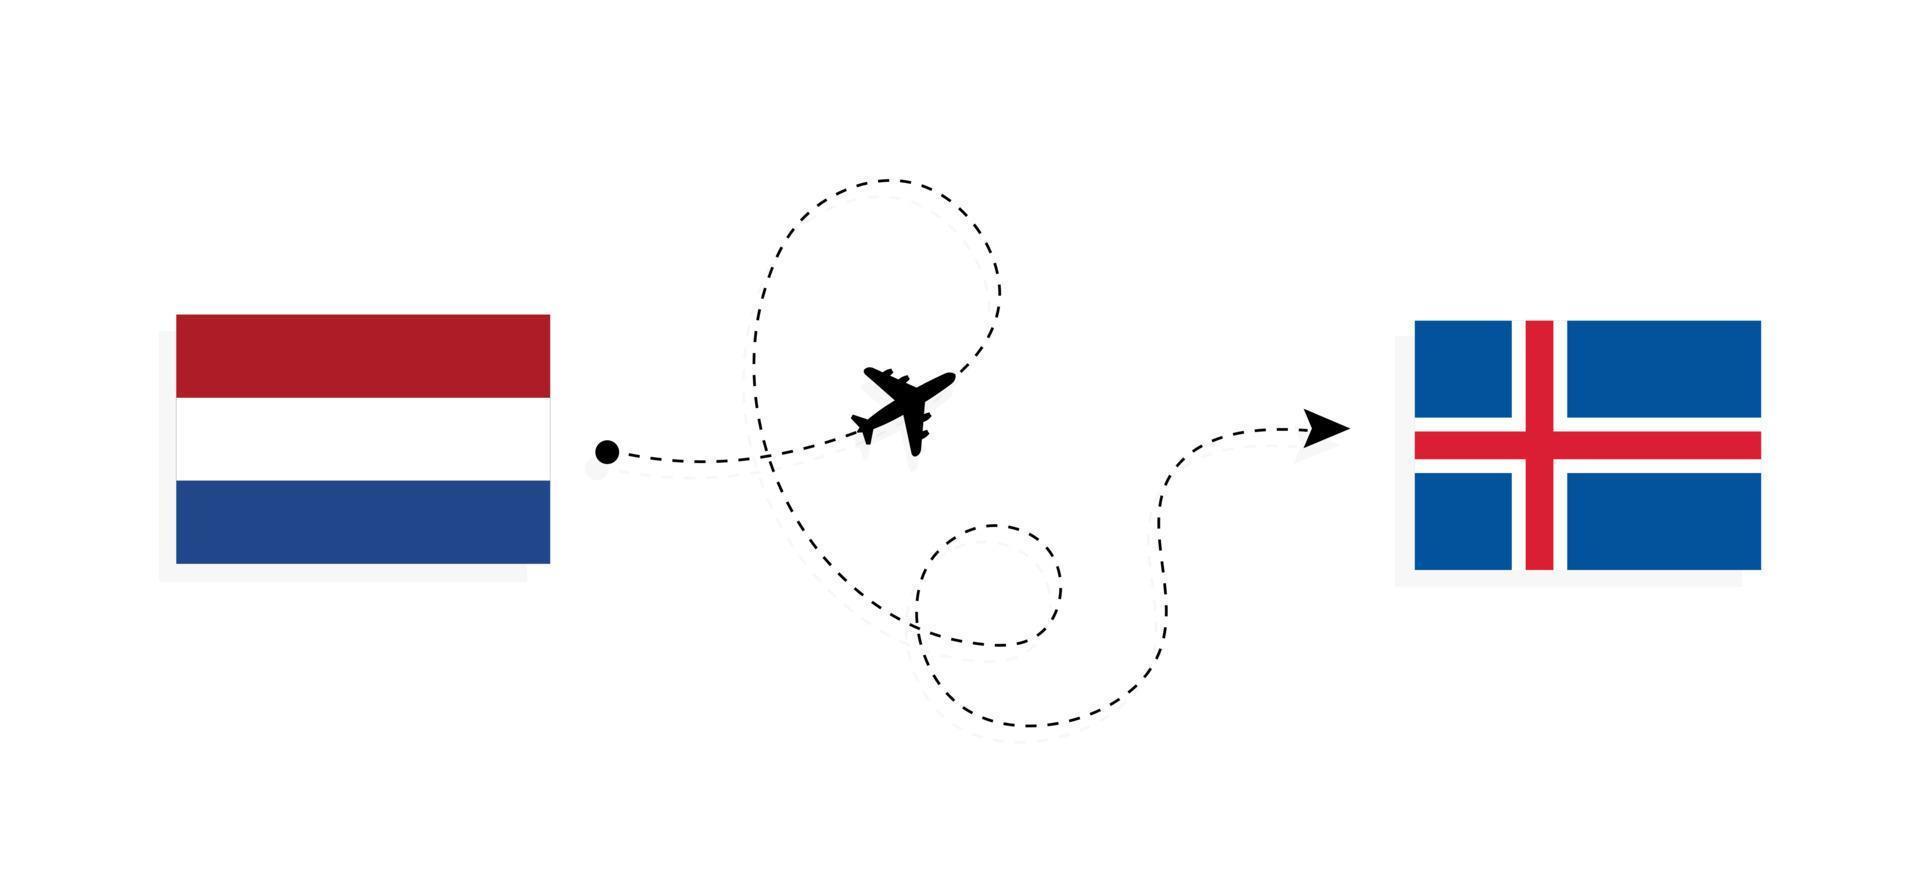 vuelo y viaje desde países bajos a islandia en avión de pasajeros concepto de viaje vector